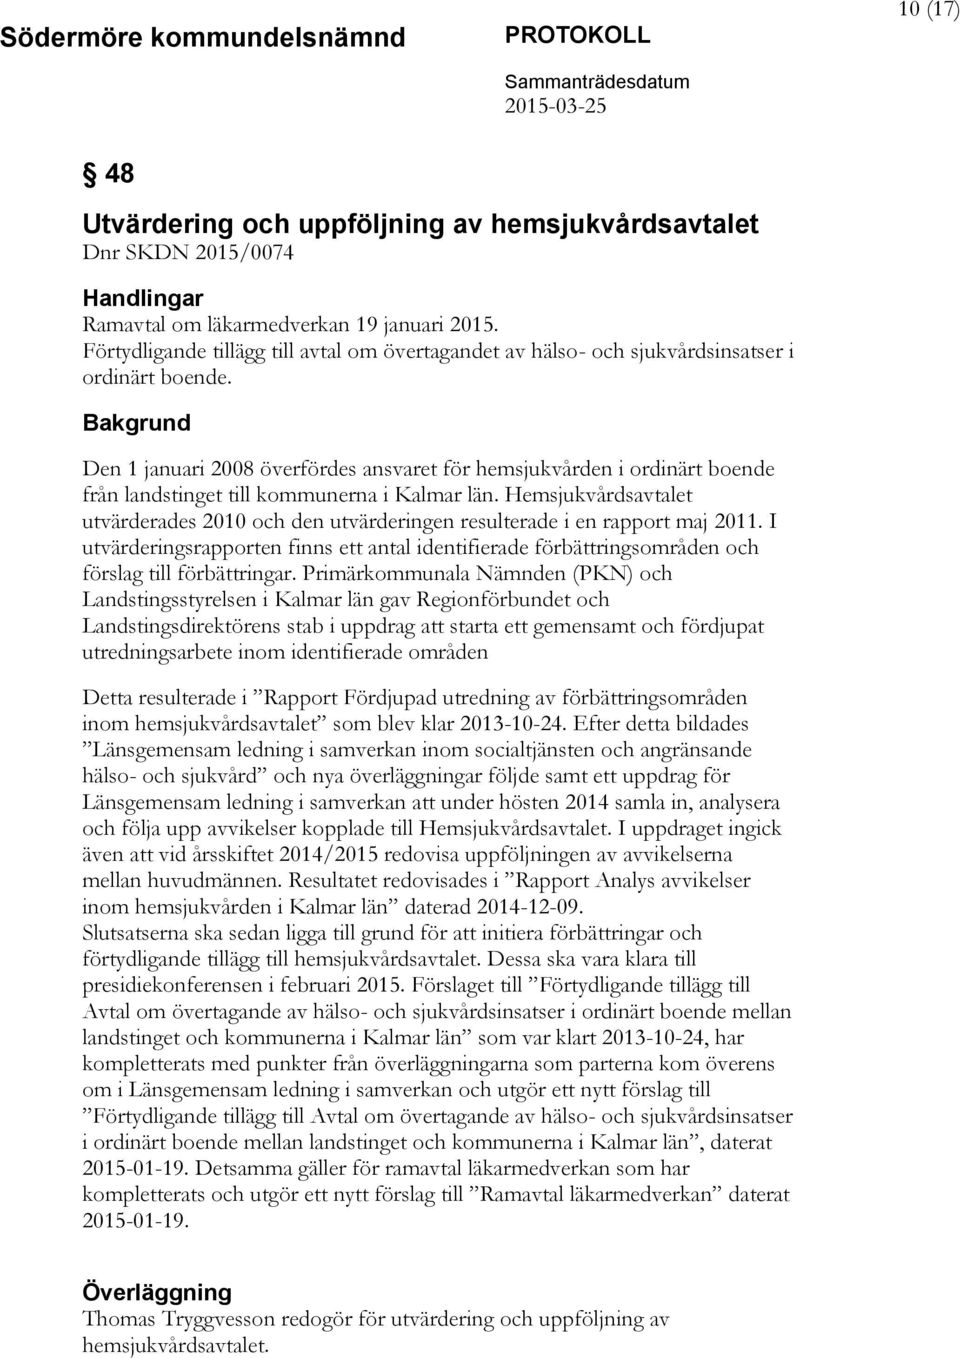 Den 1 januari 2008 överfördes ansvaret för hemsjukvården i ordinärt boende från landstinget till kommunerna i Kalmar län.